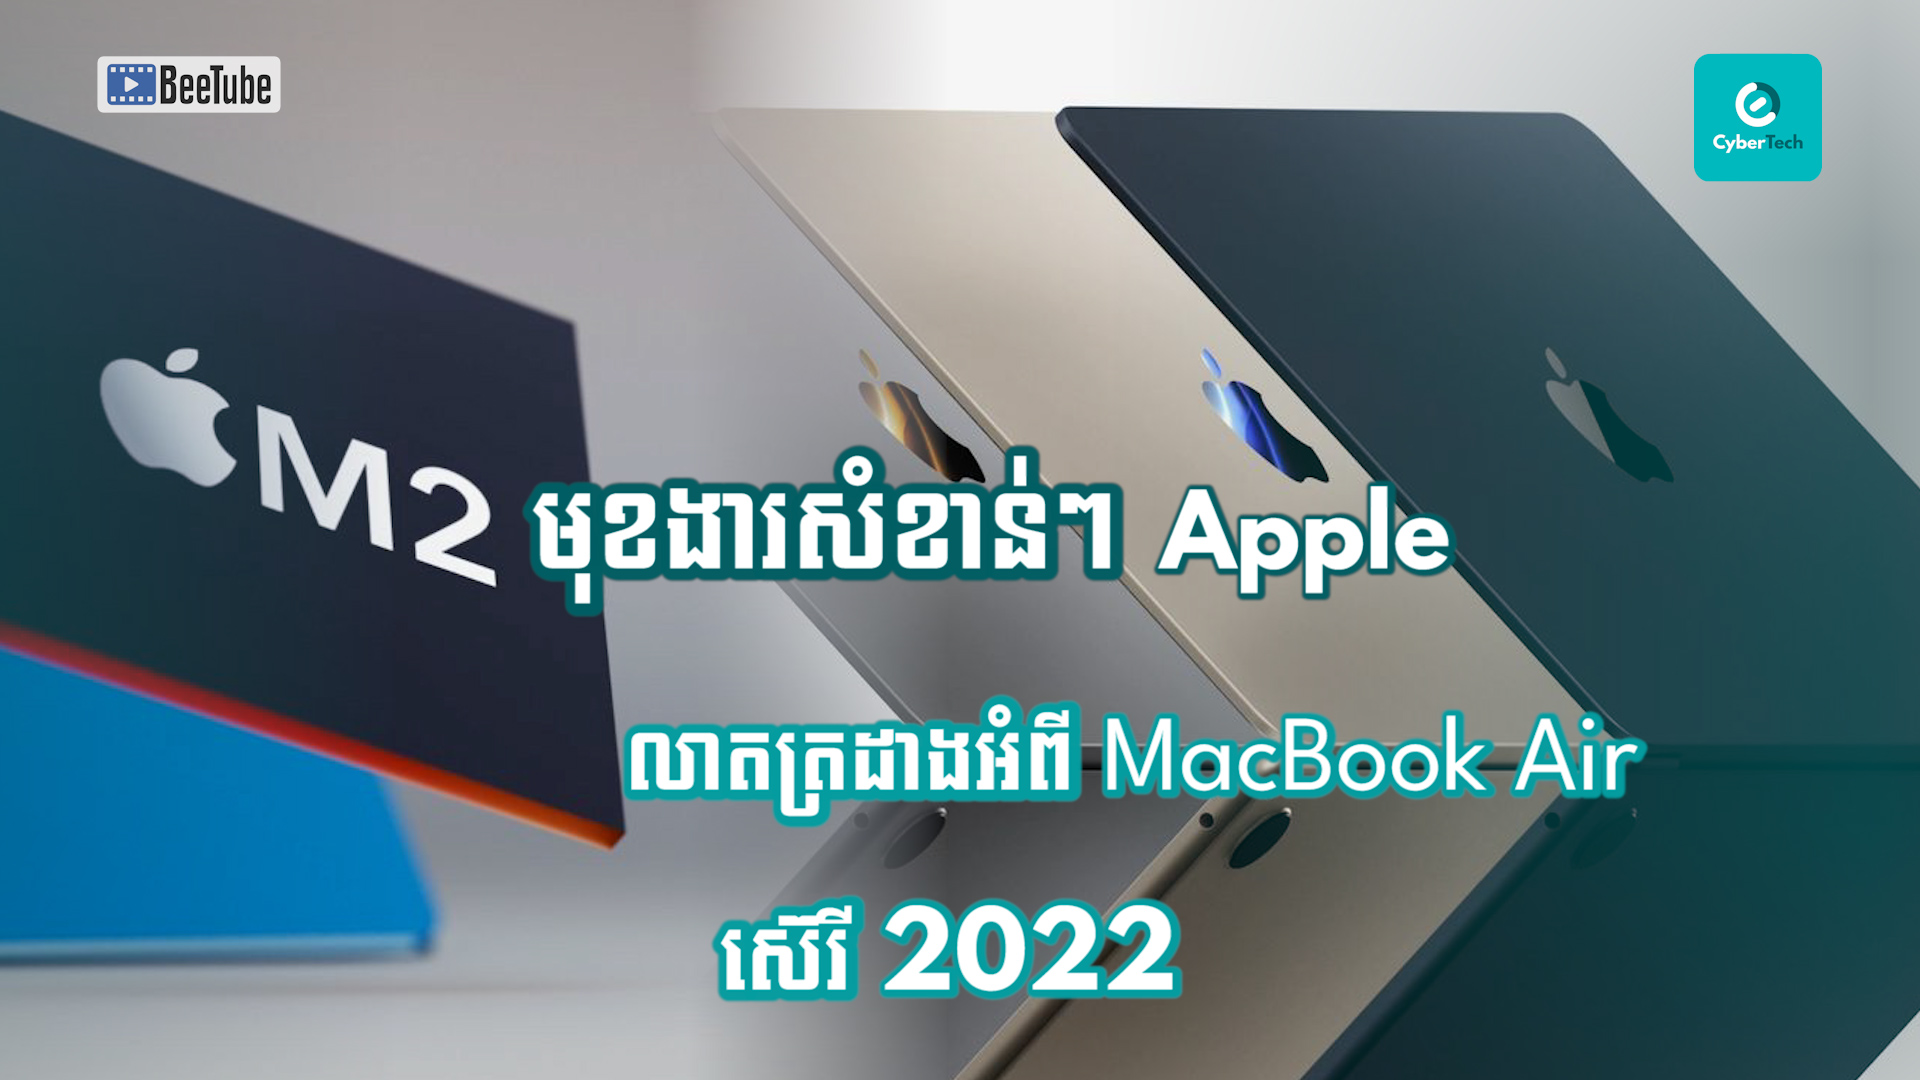 មុខងារសំខាន់ៗដែល Apple លាតត្រដាងអំពី MacBook Air ស៊េរី 2022 នេះ  